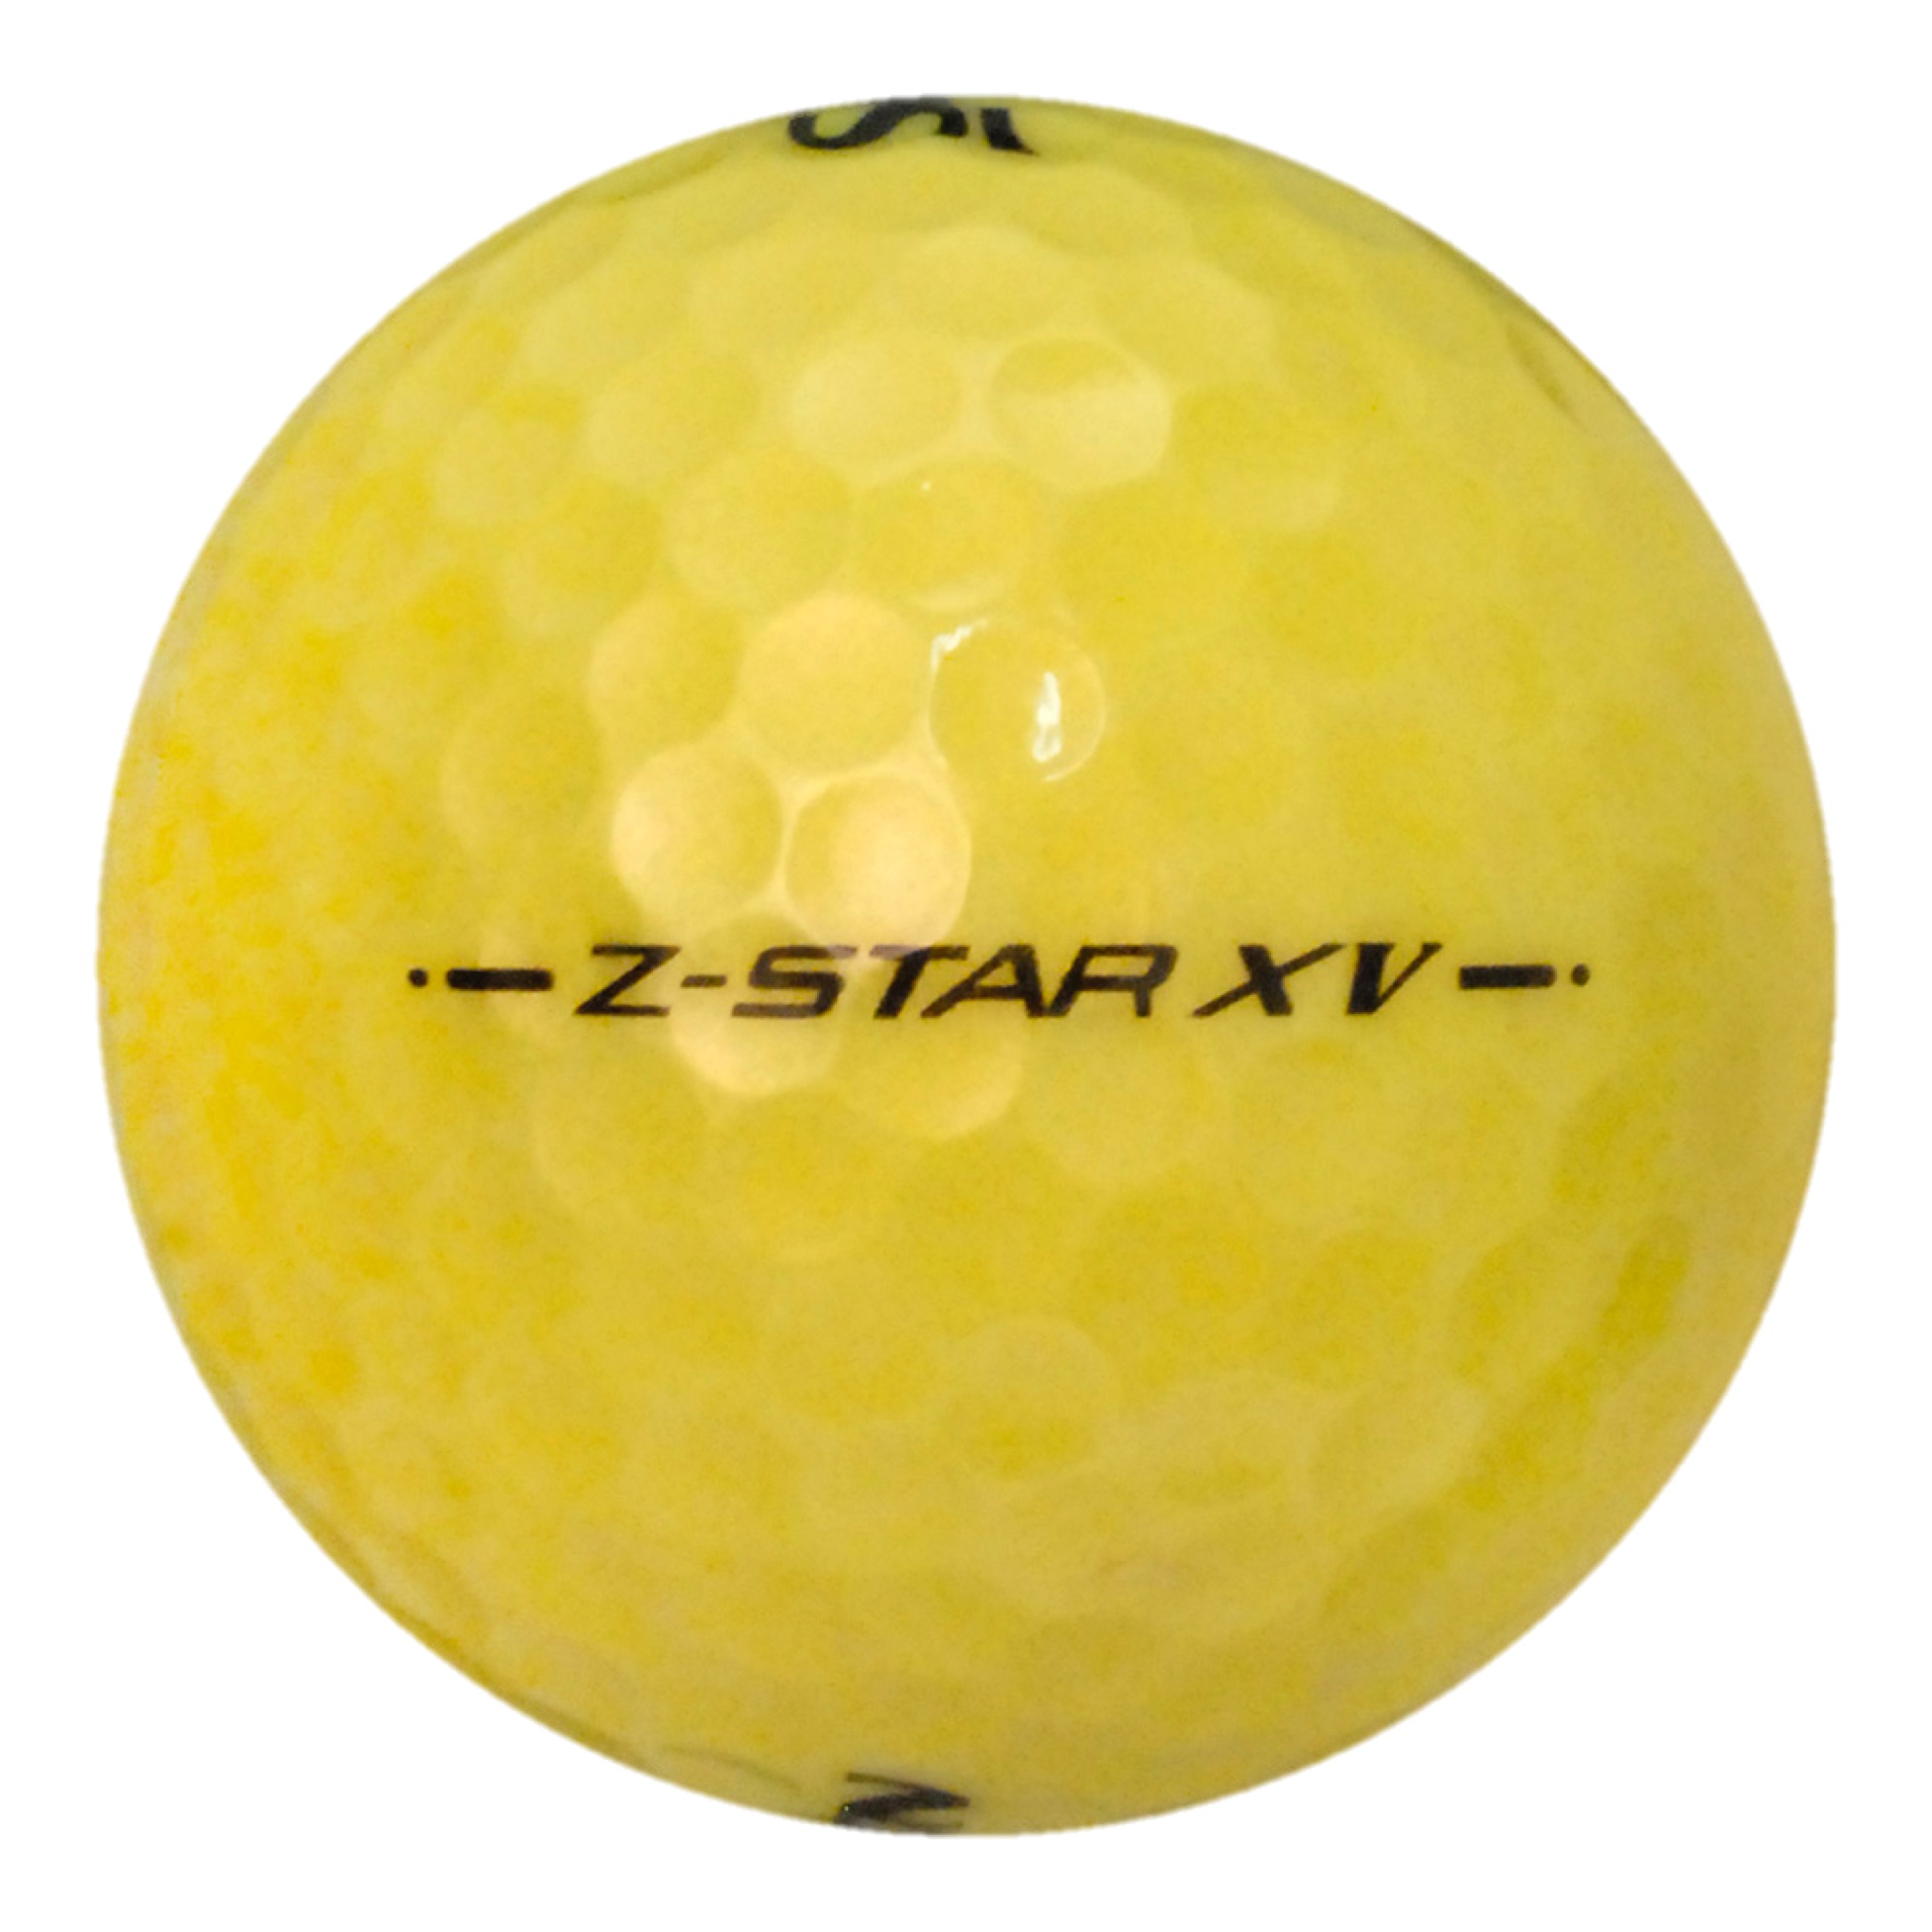 Srixon 50 Srixon Z-Star XV Yellow - Value (AAA) Grade - Recycled (Used) Golf Balls